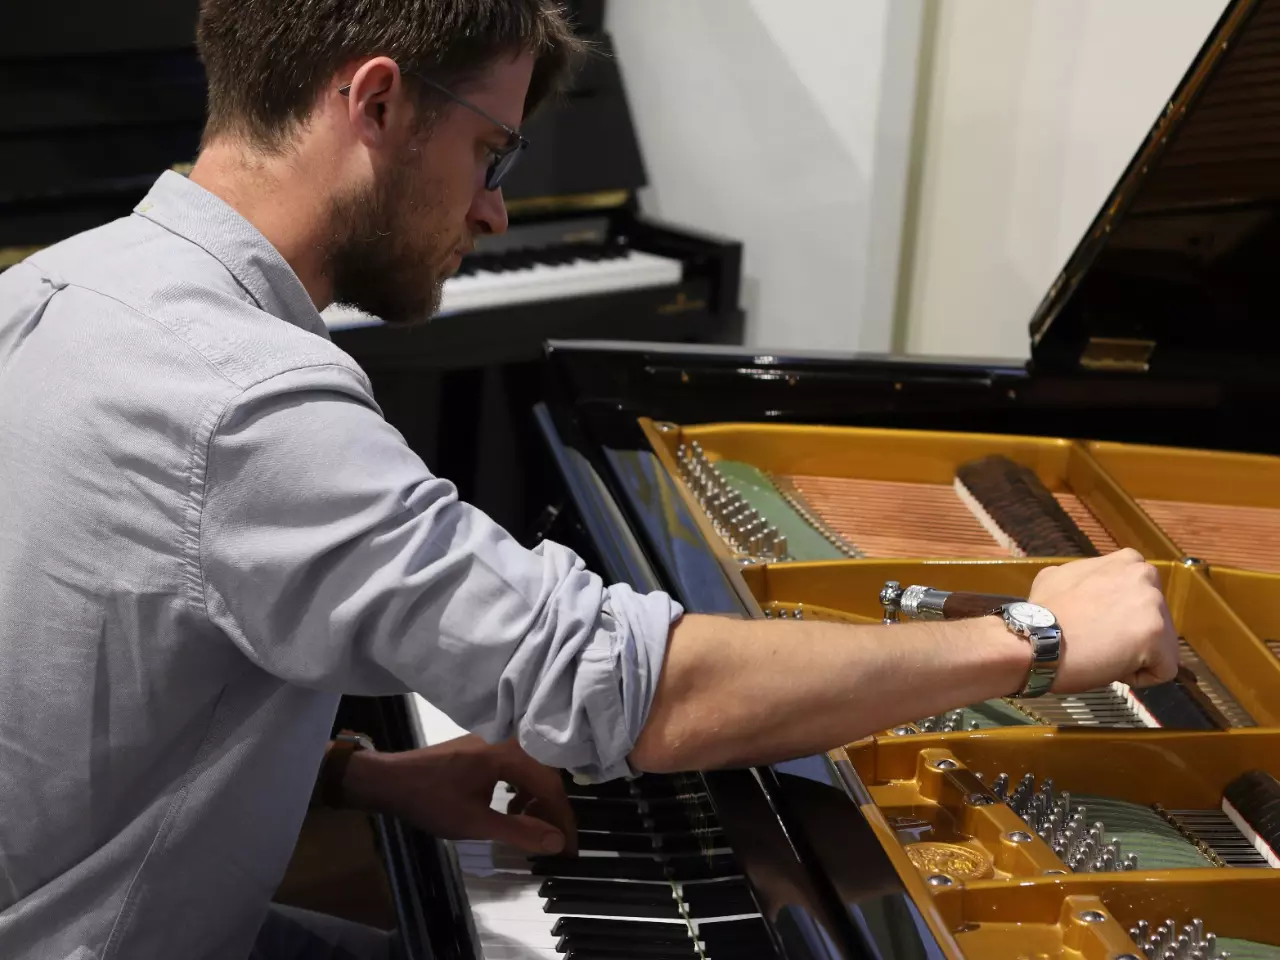 Техника настройки пианино, рояля и фортепиано в Москве